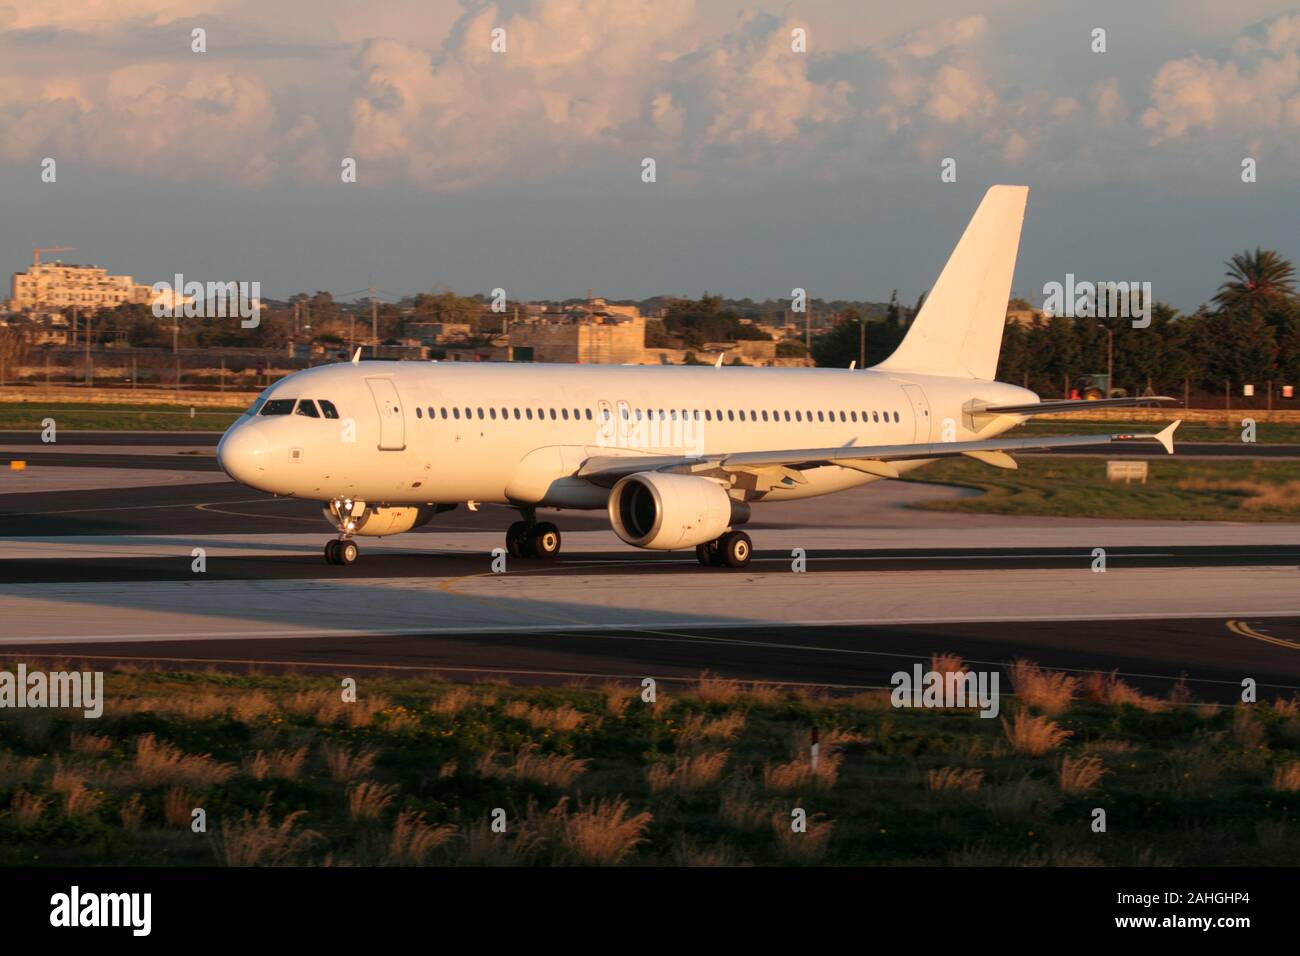 Viajes aéreos y aviación civil. Avión de pasajeros Airbus A320 sin marcar en la pista al atardecer. No se ve ningún título, librea o logotipo de la aerolínea. Foto de stock